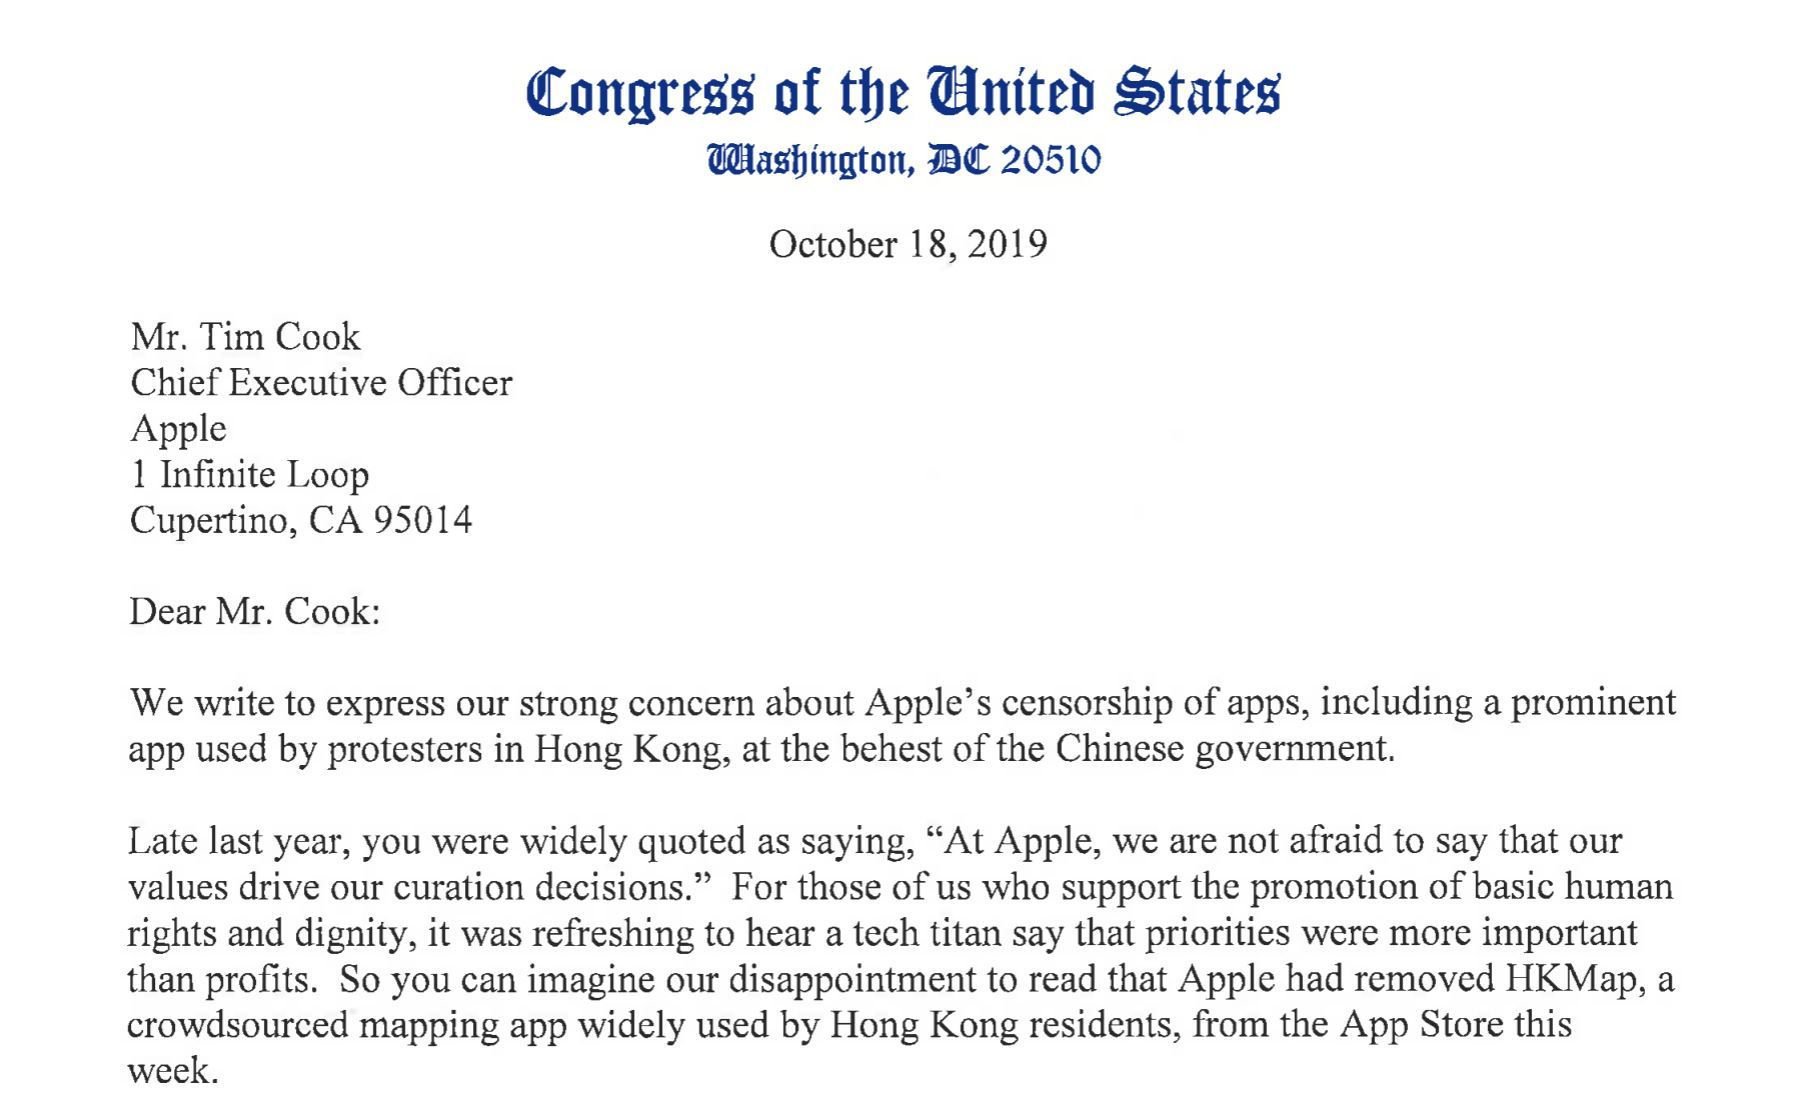 香港デモ支援アプリ削除のAppleのクックCEOに対し、米議員らが「中国の圧力に抵抗せよ」